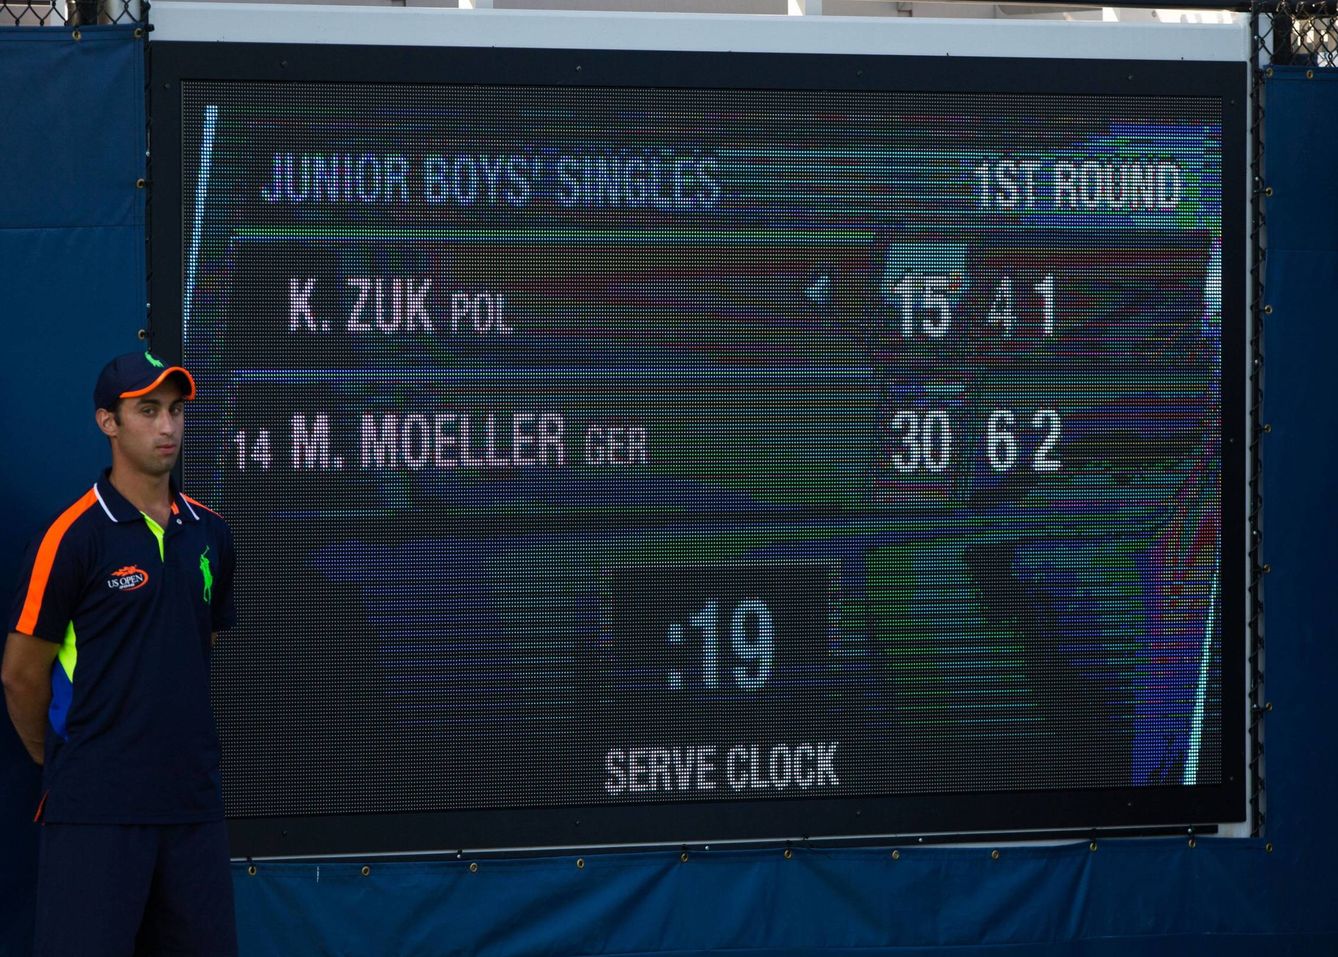 Los tenistas dispondrán de 25 segundos para sacar en el próximo US Open. (Imago)